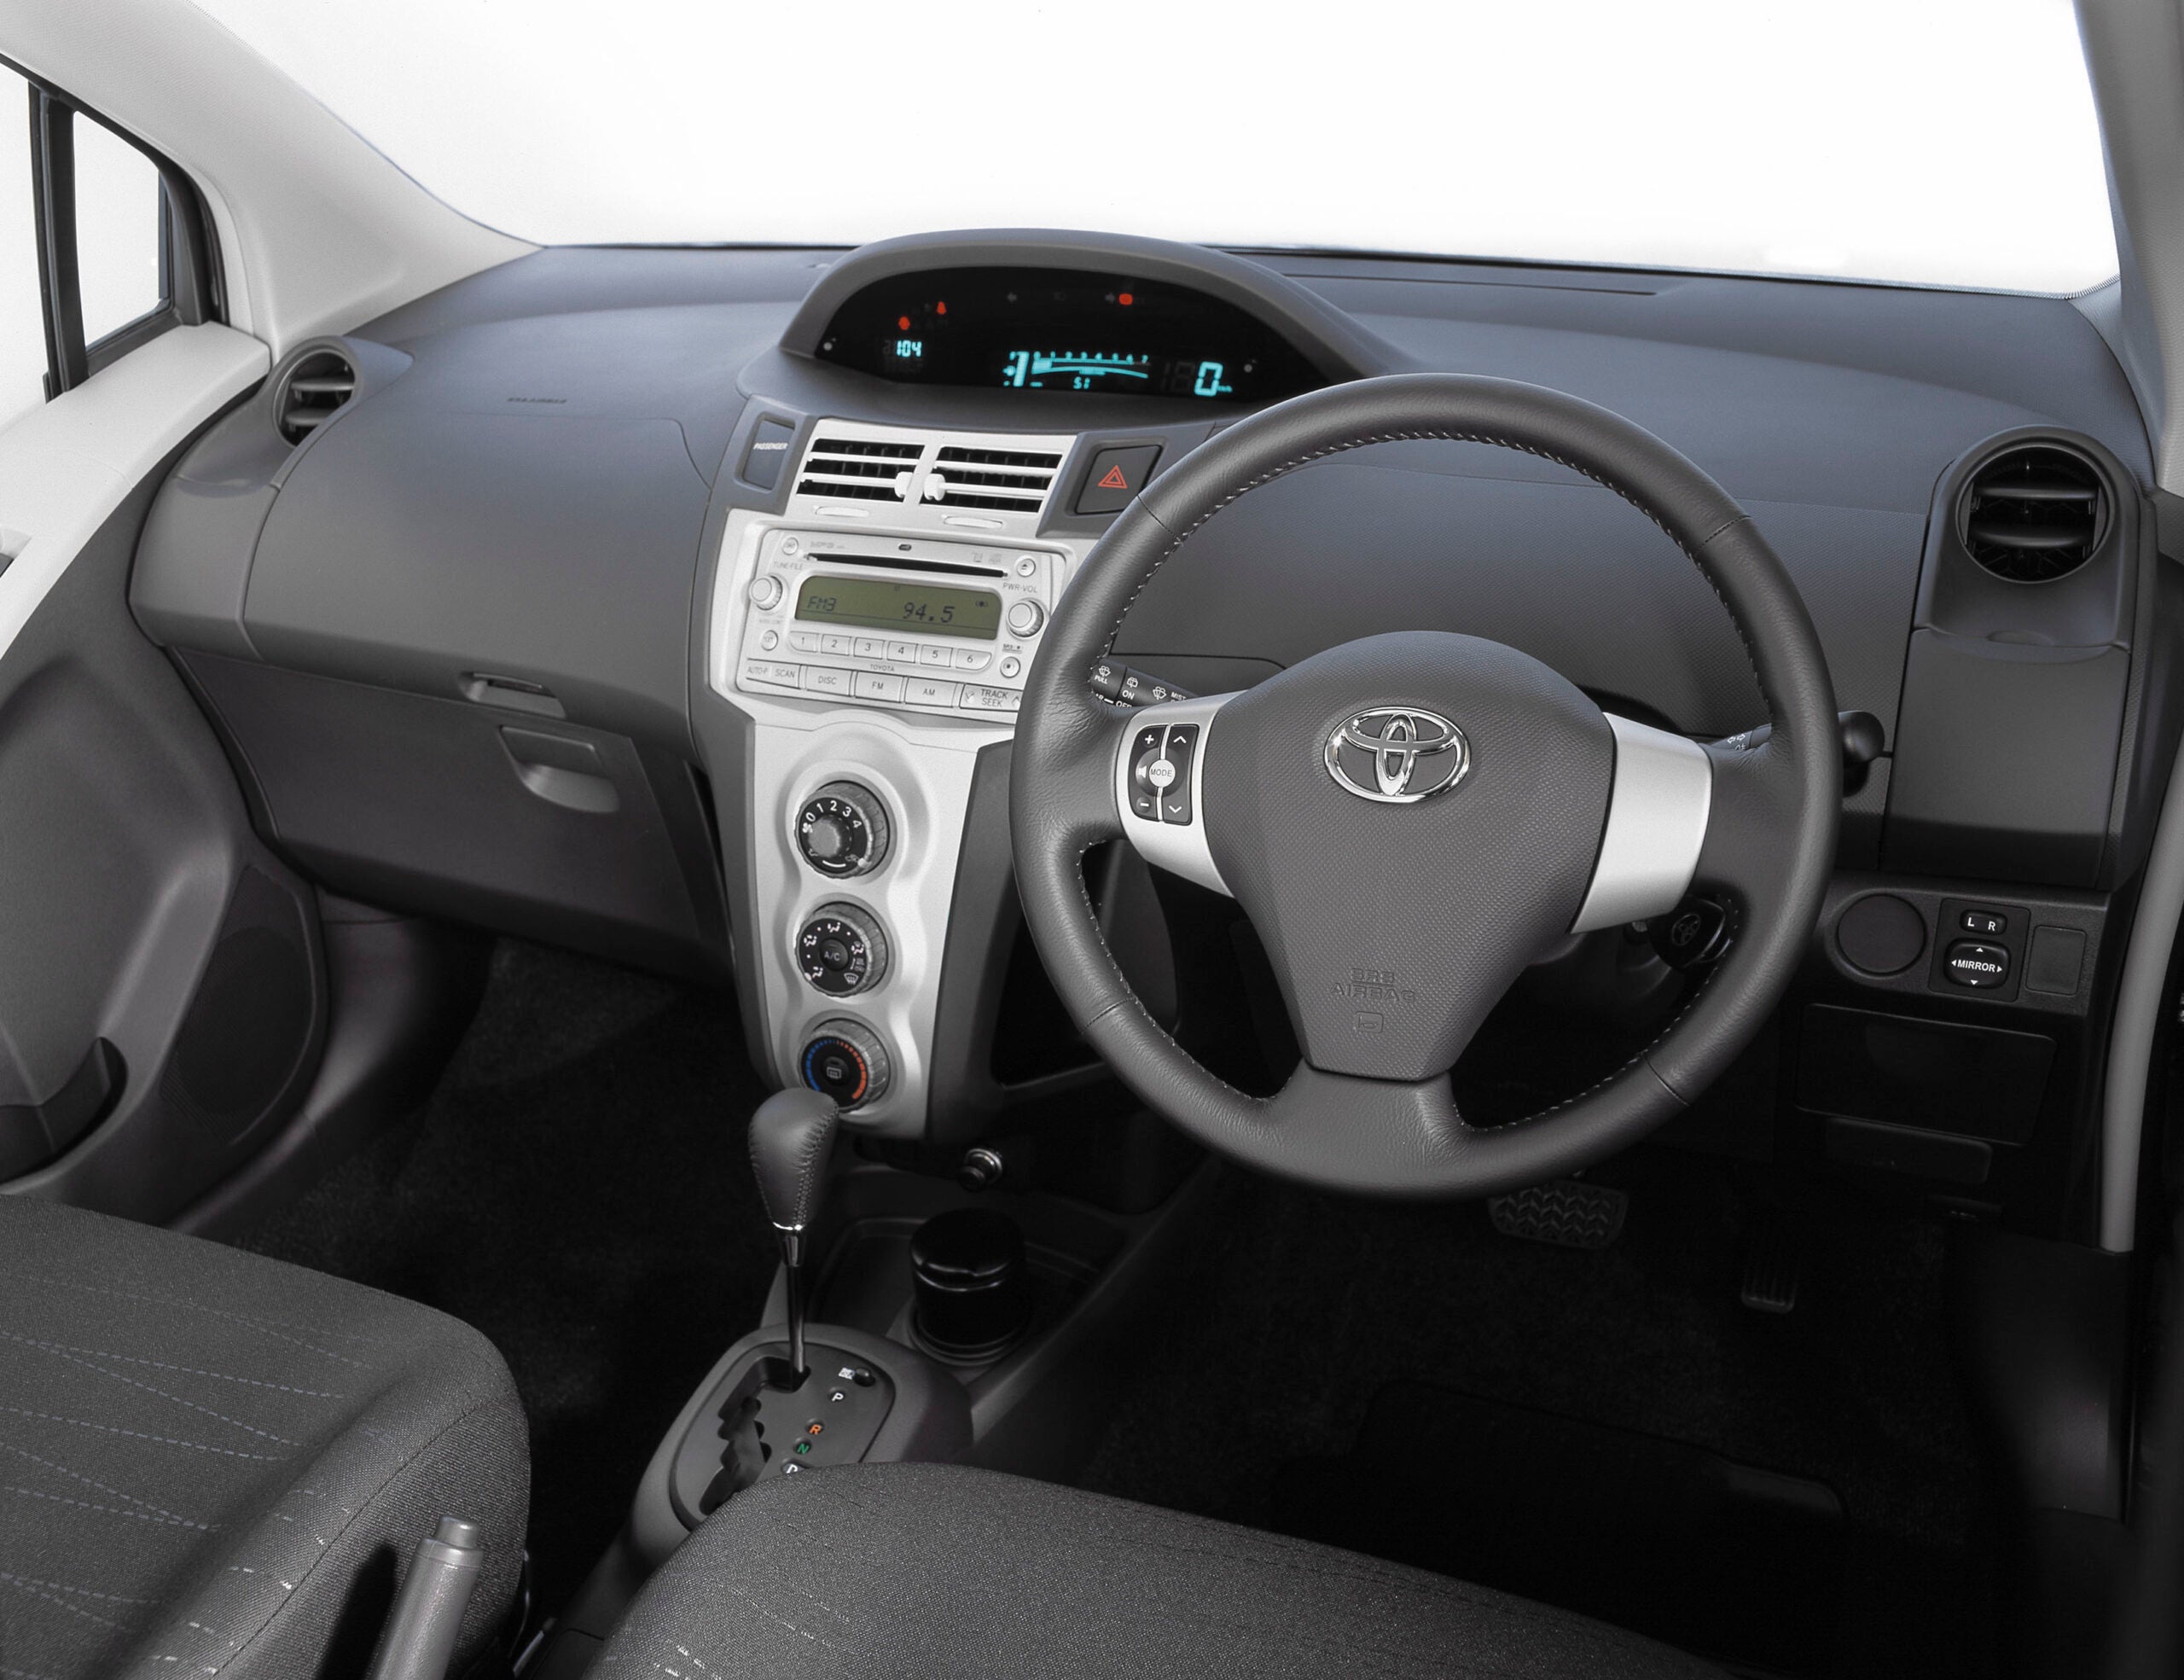 Đánh giá ưu nhược điểm của Toyota Yaris 2007 Ngoại thất nội thất động cơ